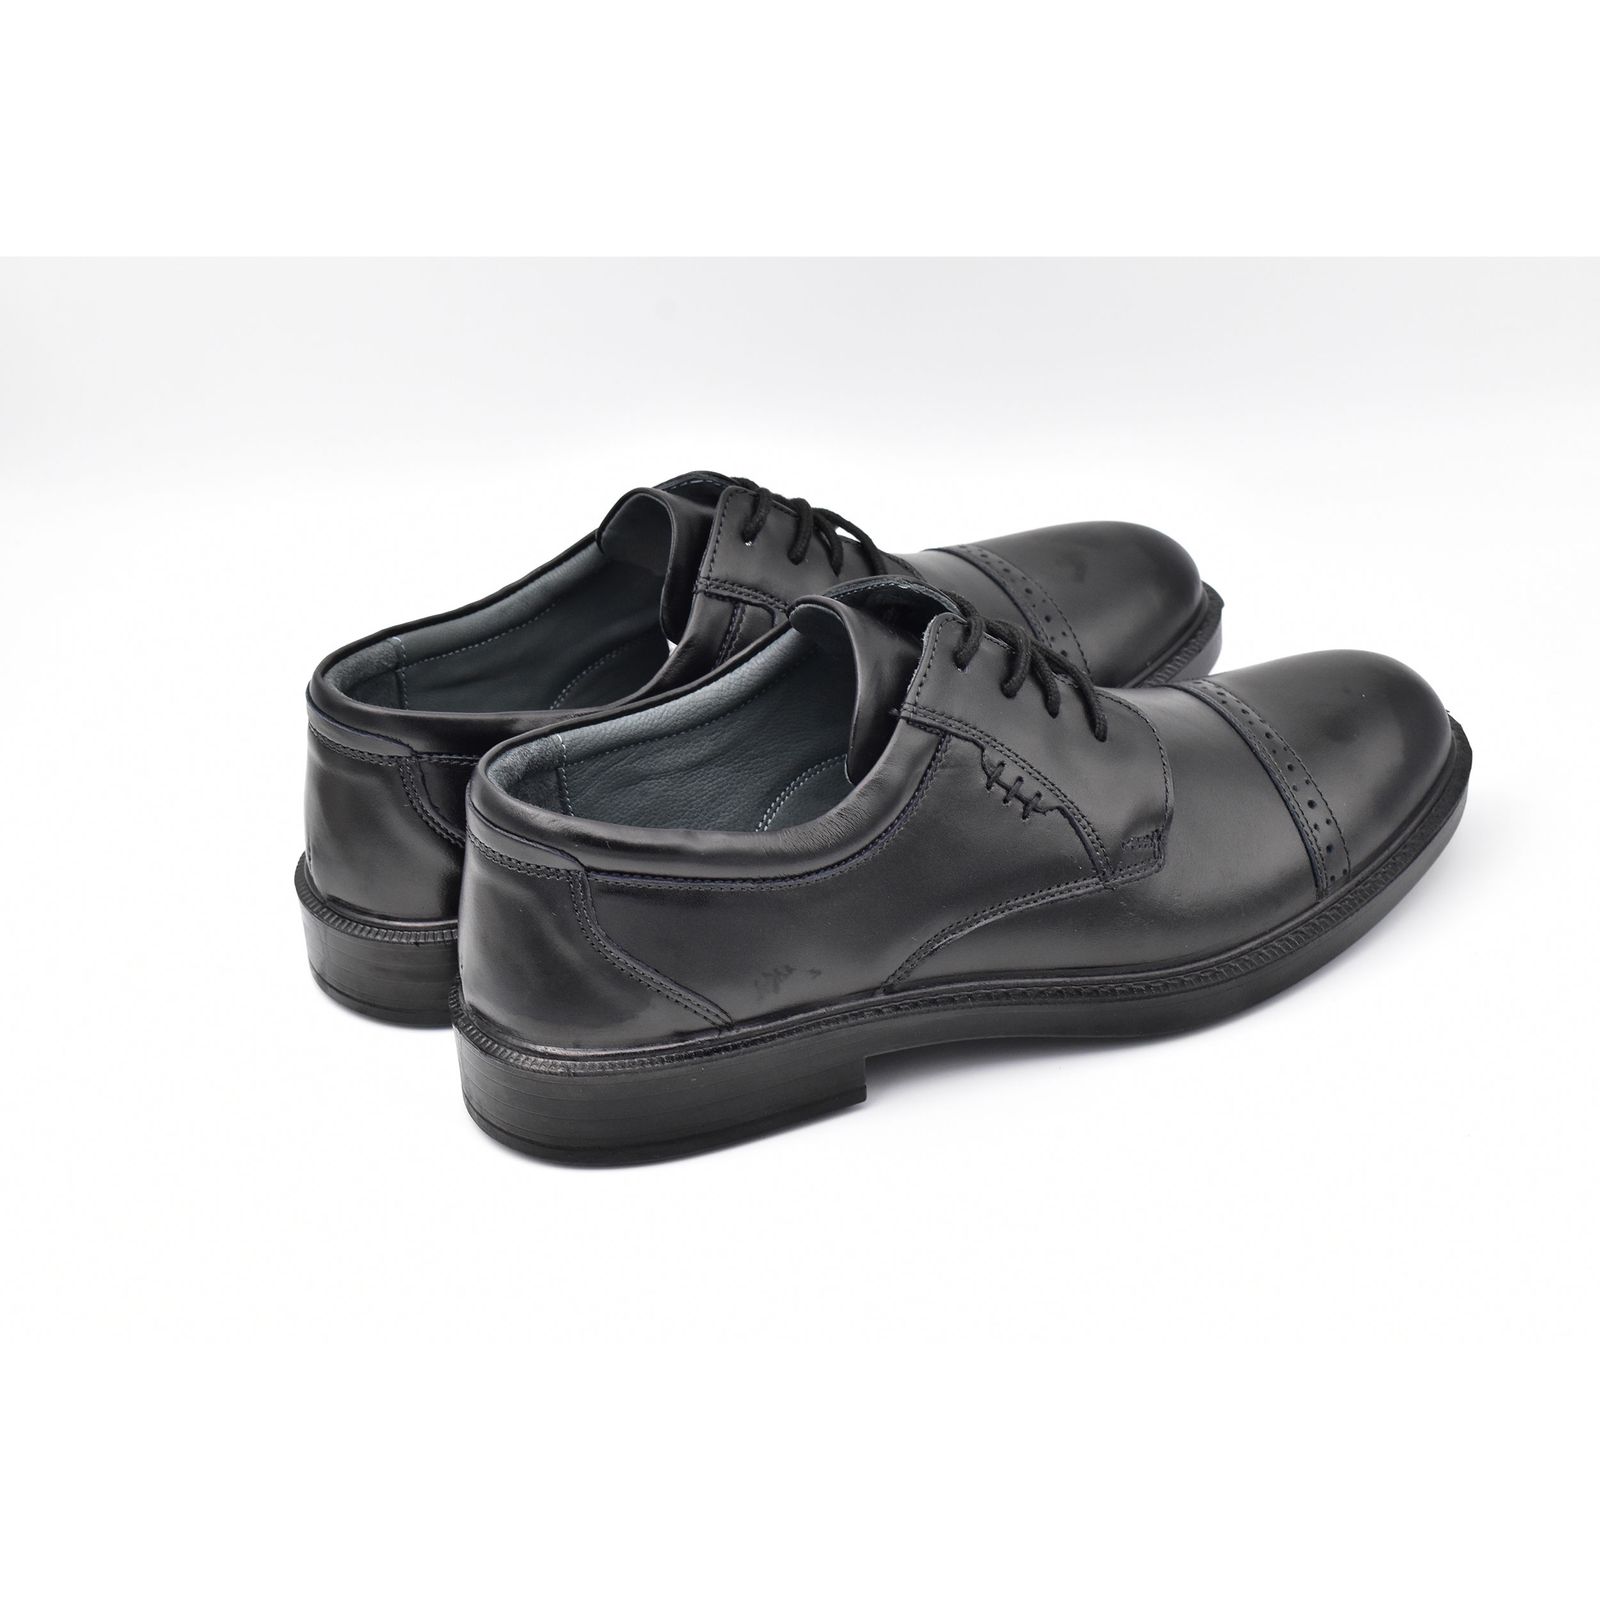 کفش مردانه پاما مدل TOE کد G1119 -  - 5